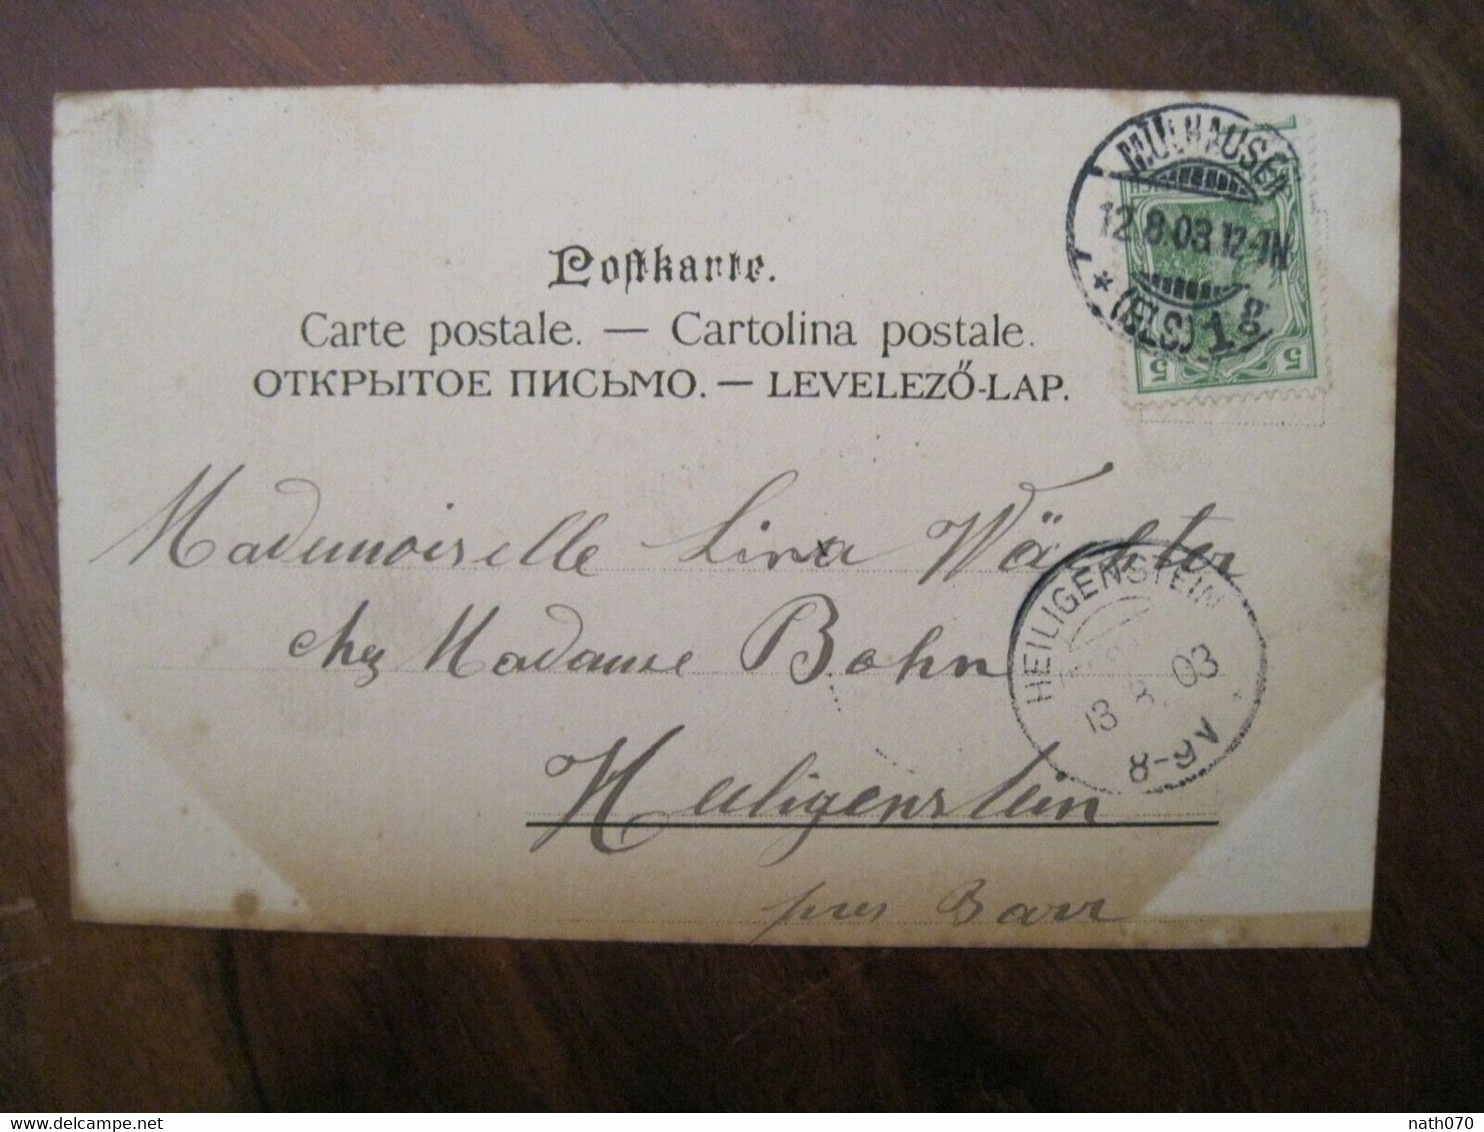 AK 1902 CPA Pferde Bauer Litho Heiligenstein BARR Elsass Chevaux Laboureur - Bauern